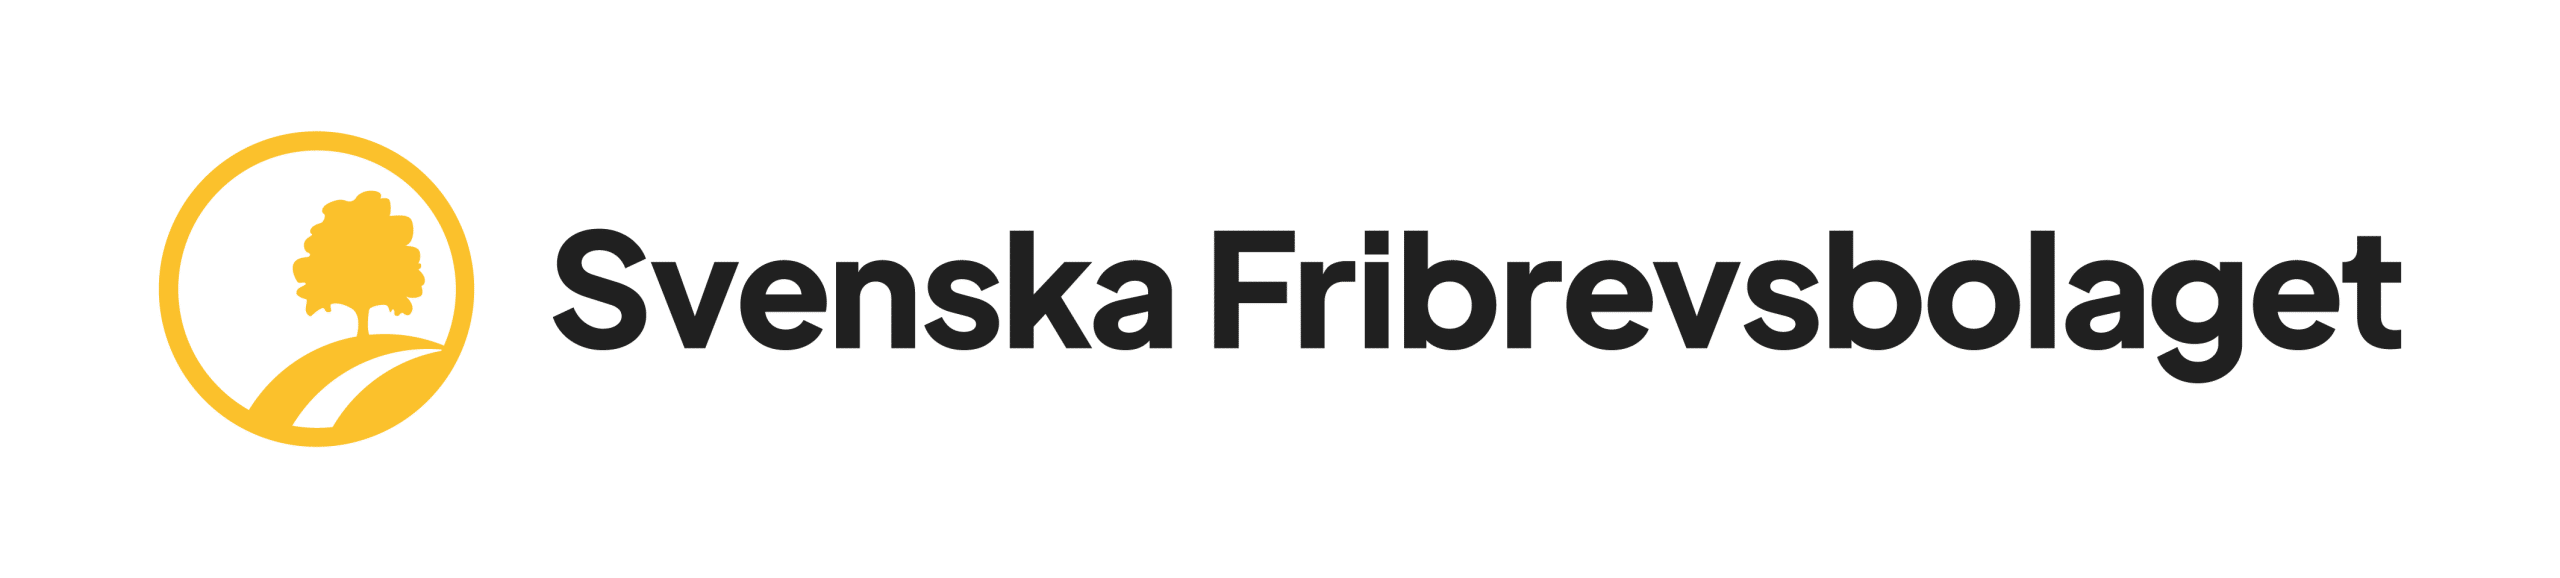 Seniordeal – Svenska Fribrevsbolaget Logotyp